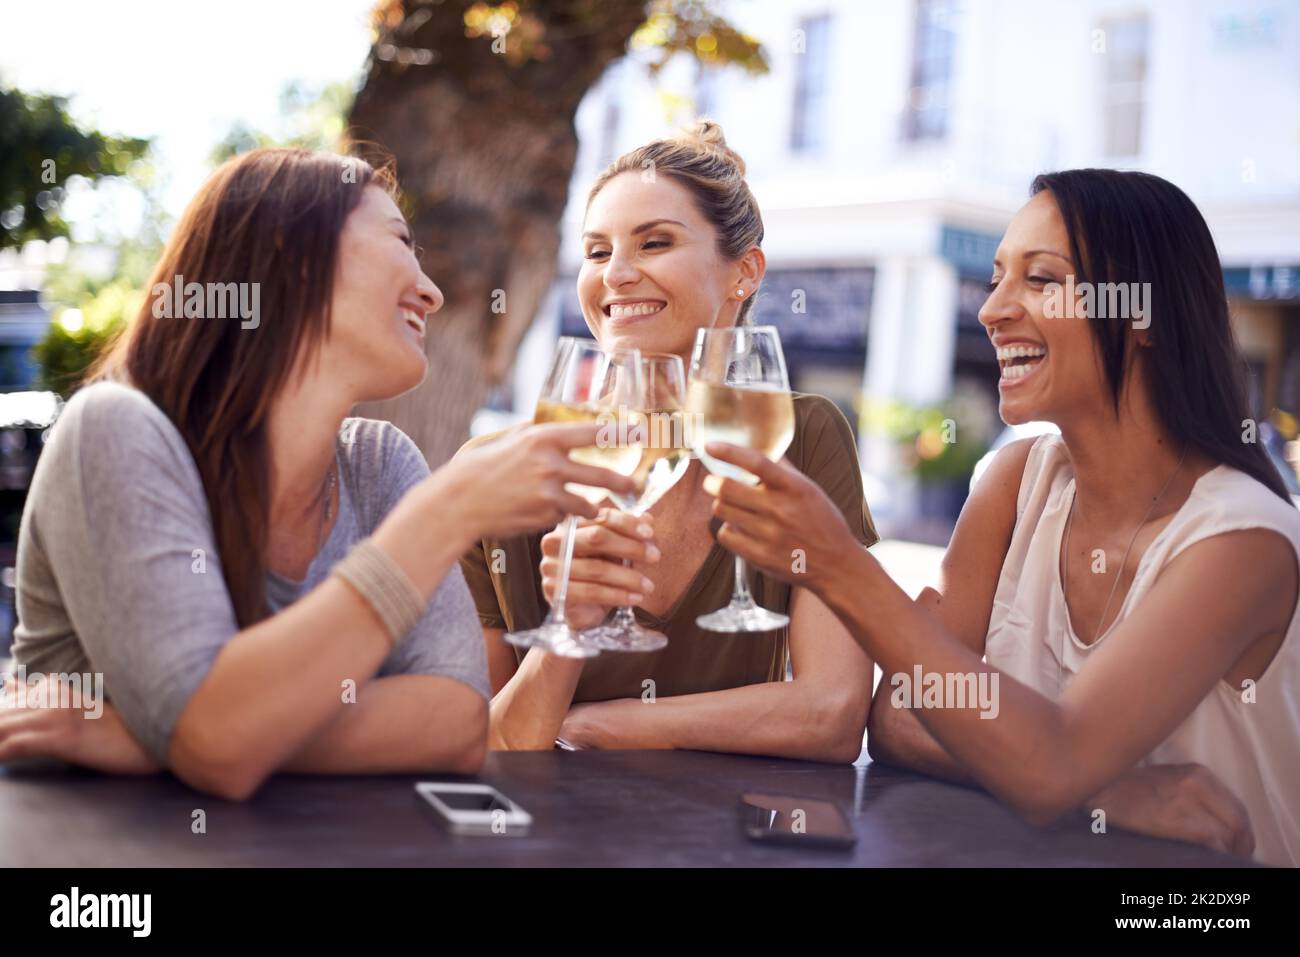 Tieni vicini gli amici. Shot di un gruppo felice di amici che hanno un drink insieme. Foto Stock